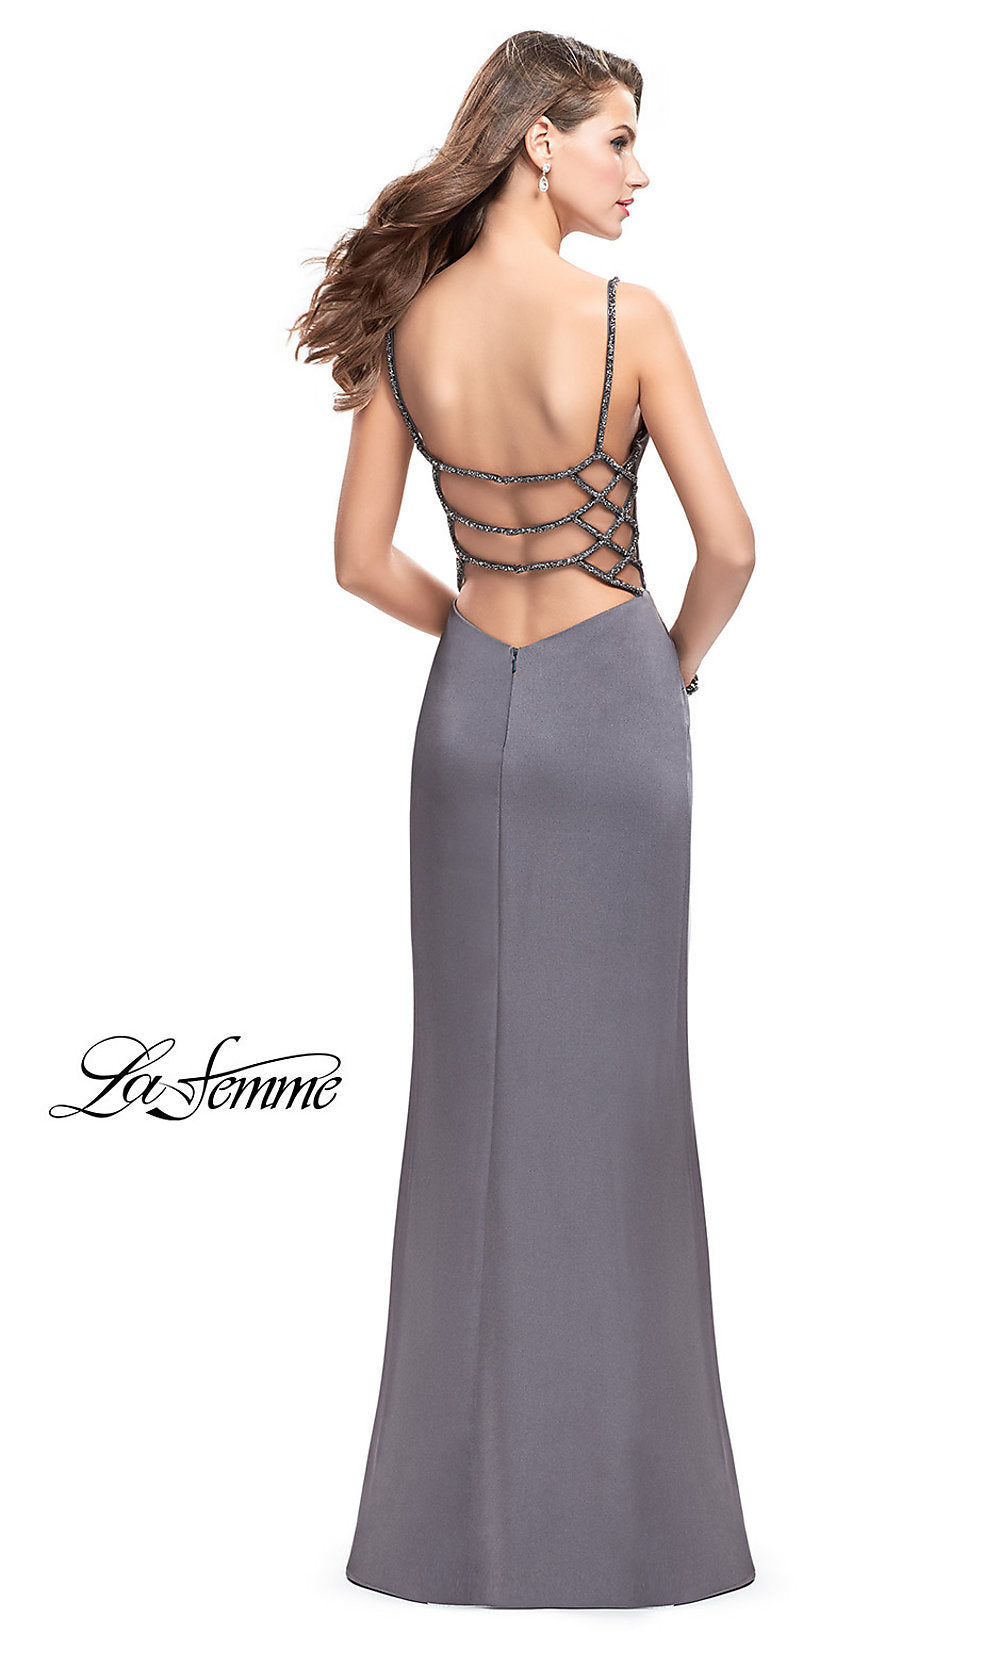 La Femme-Beaded Open-Back Long La Femme Prom Dress with Slit